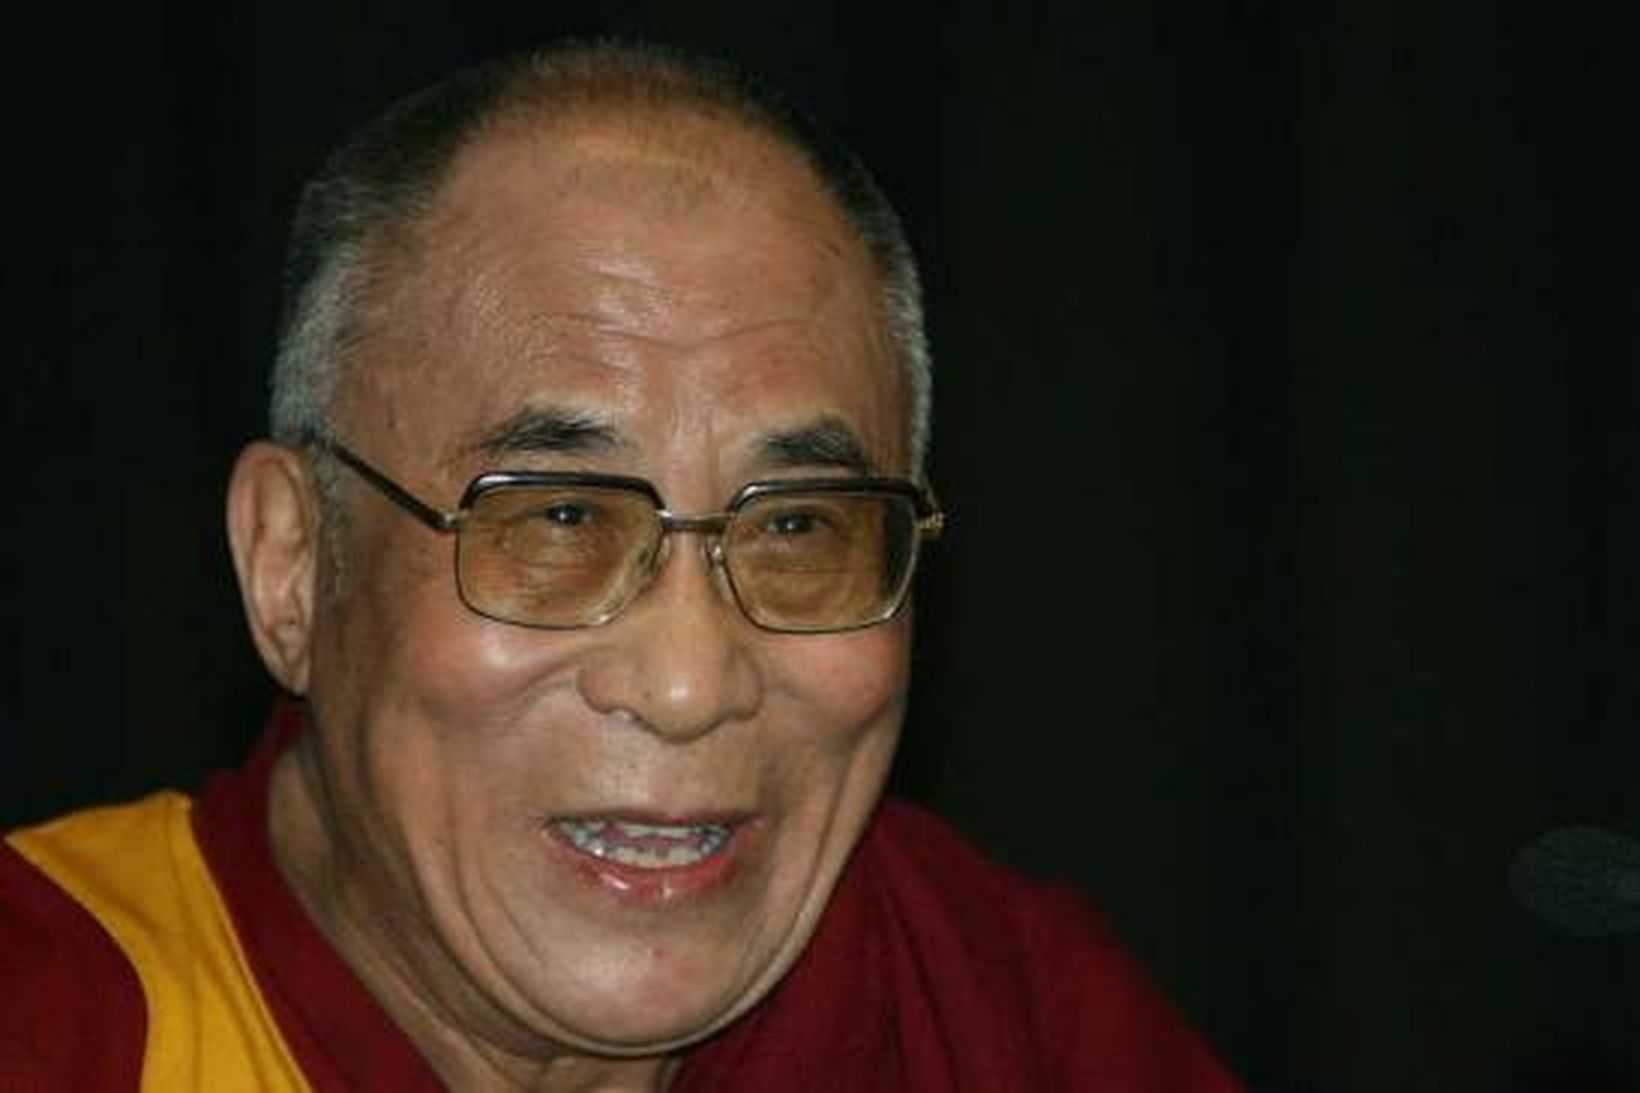 Dalai Lama.